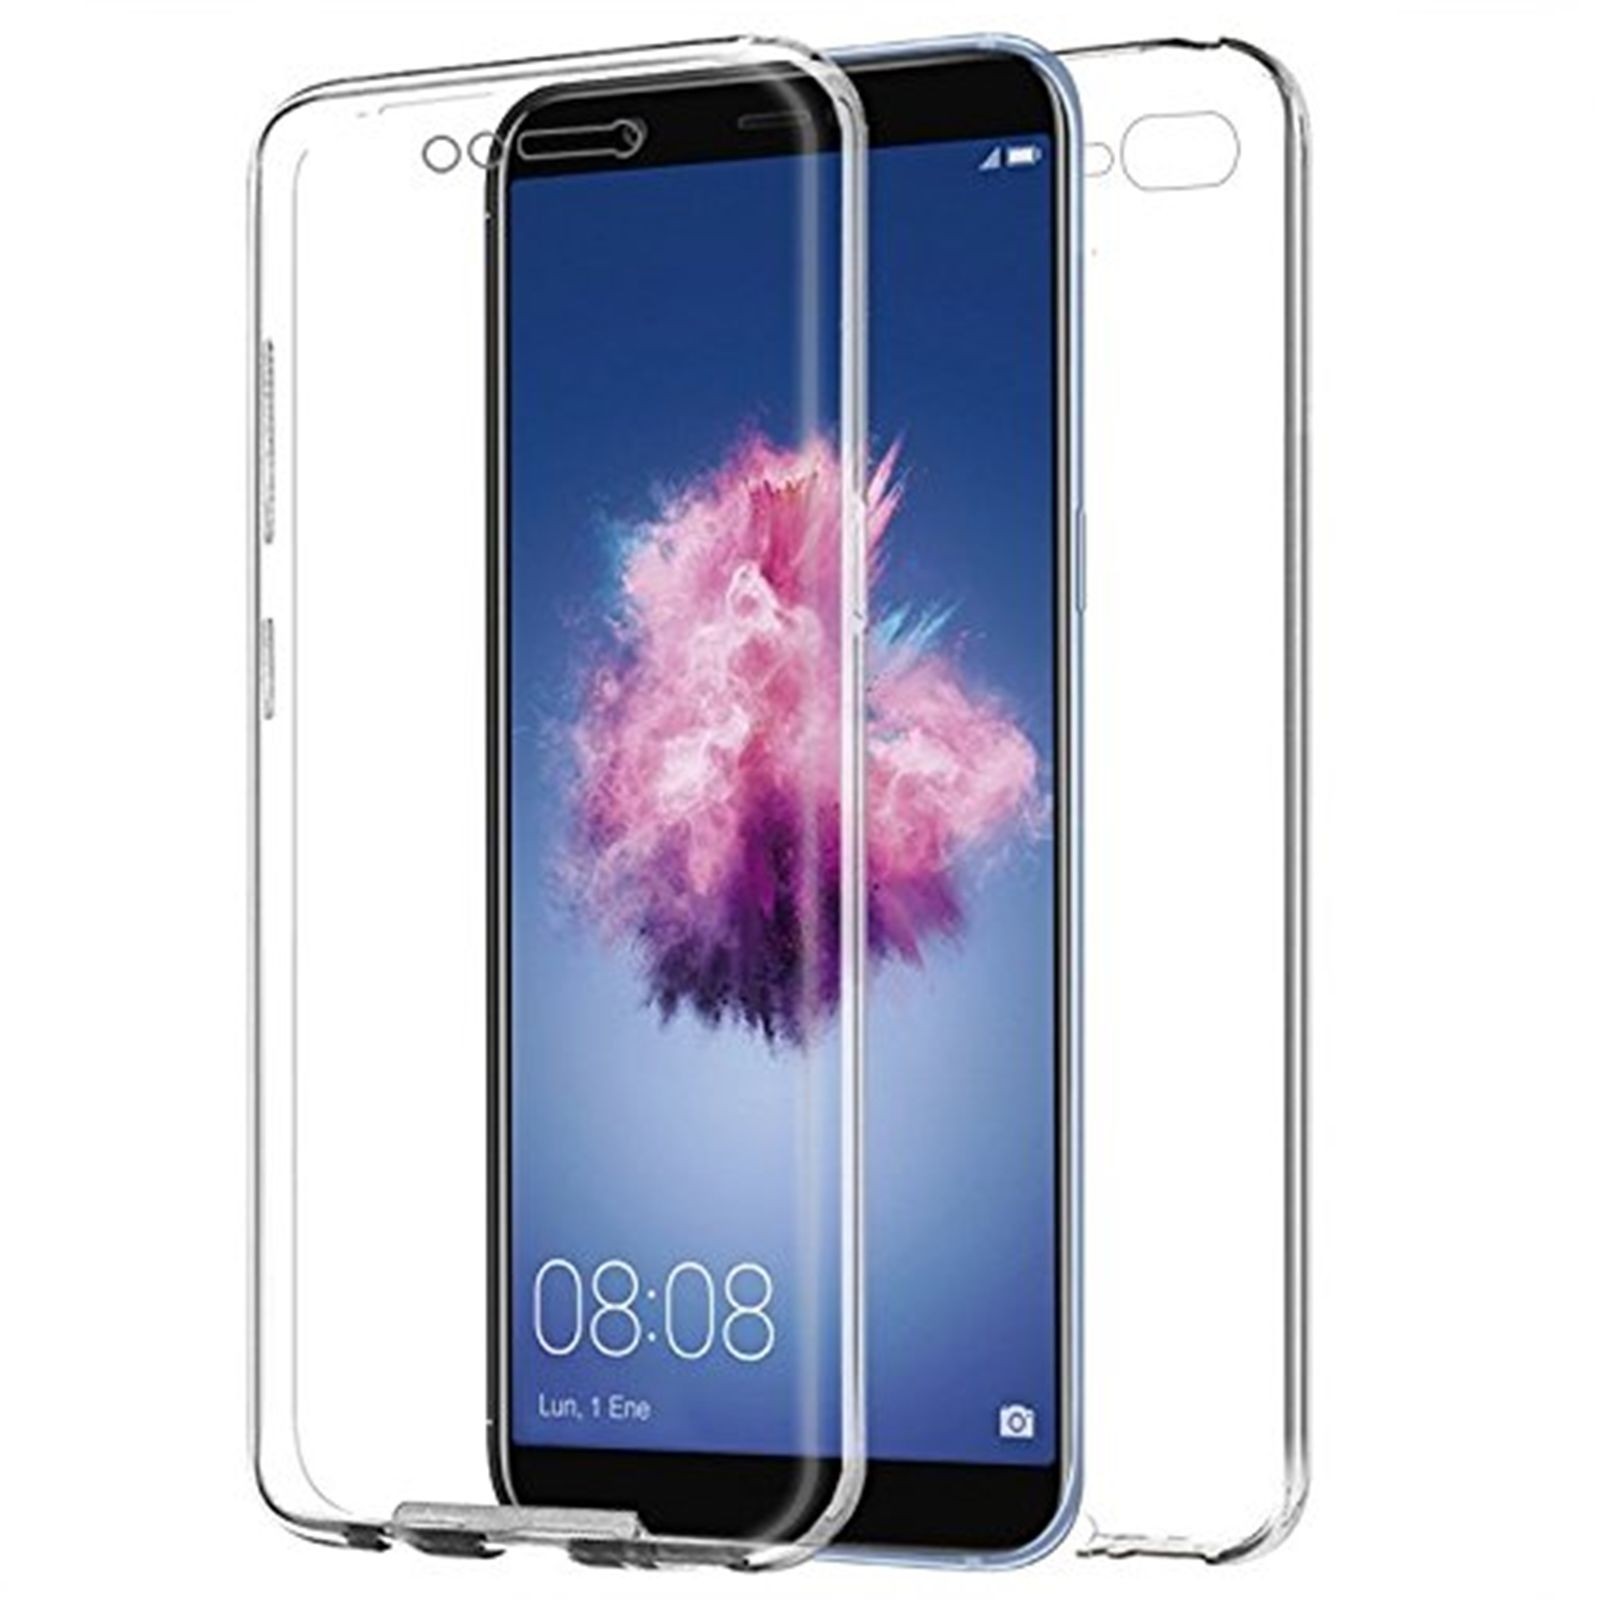 Capa TPU 360 transparente Huawei P8 ou P9 Lite 2017